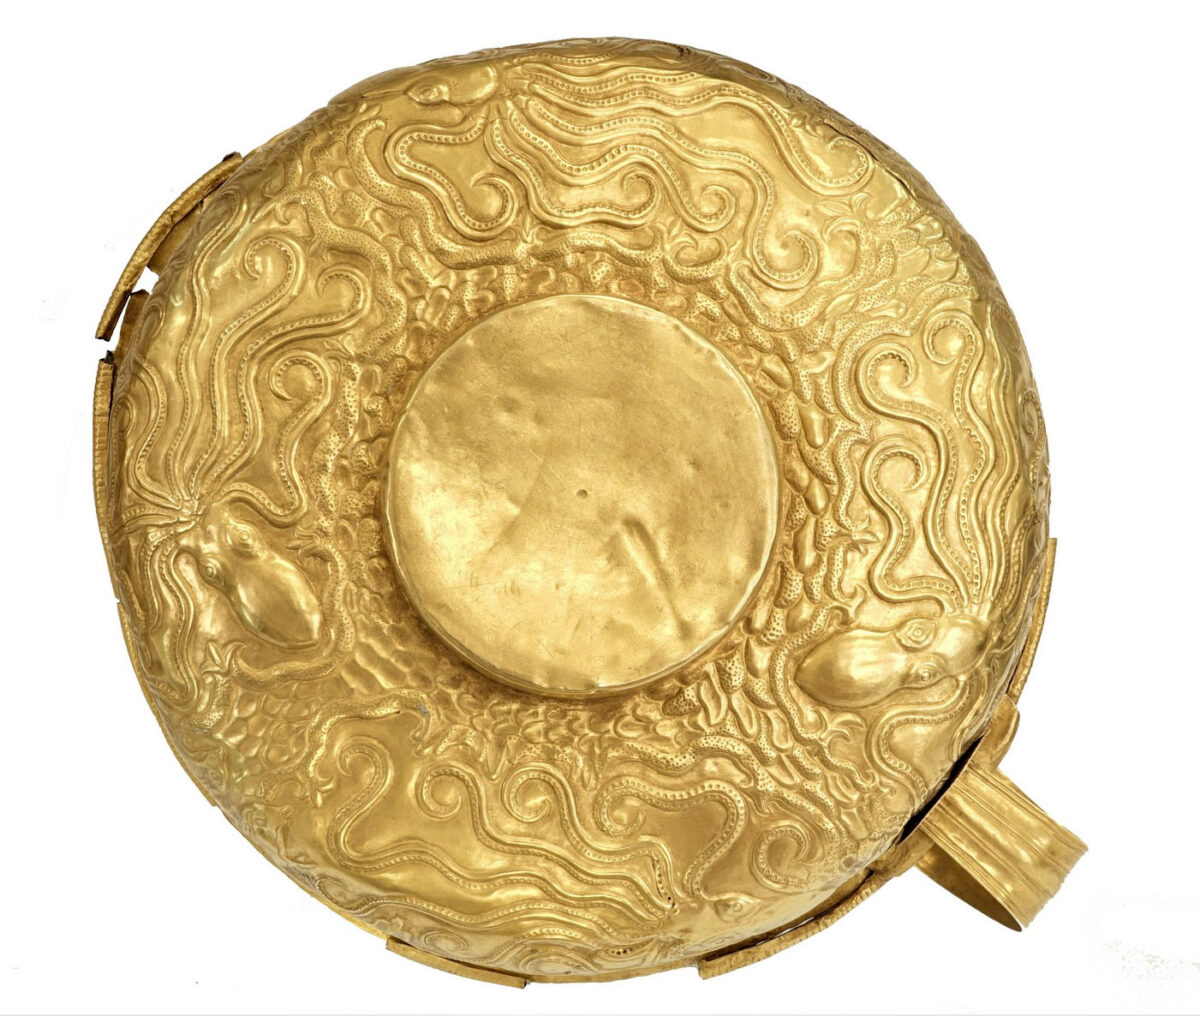 Χρυσό αβαθές κύπελλο με ανάγλυφη διακόσμηση που αποδίδει θαλασσινό τοπίο, από τη Μιδέα (Δενδρά) Αργολίδας. 1500–1300 π.Χ. ΕΑΜ, Π 7341. © Εθνικό Αρχαιολογικό Μουσείο/© Μ. Κοντάκη.